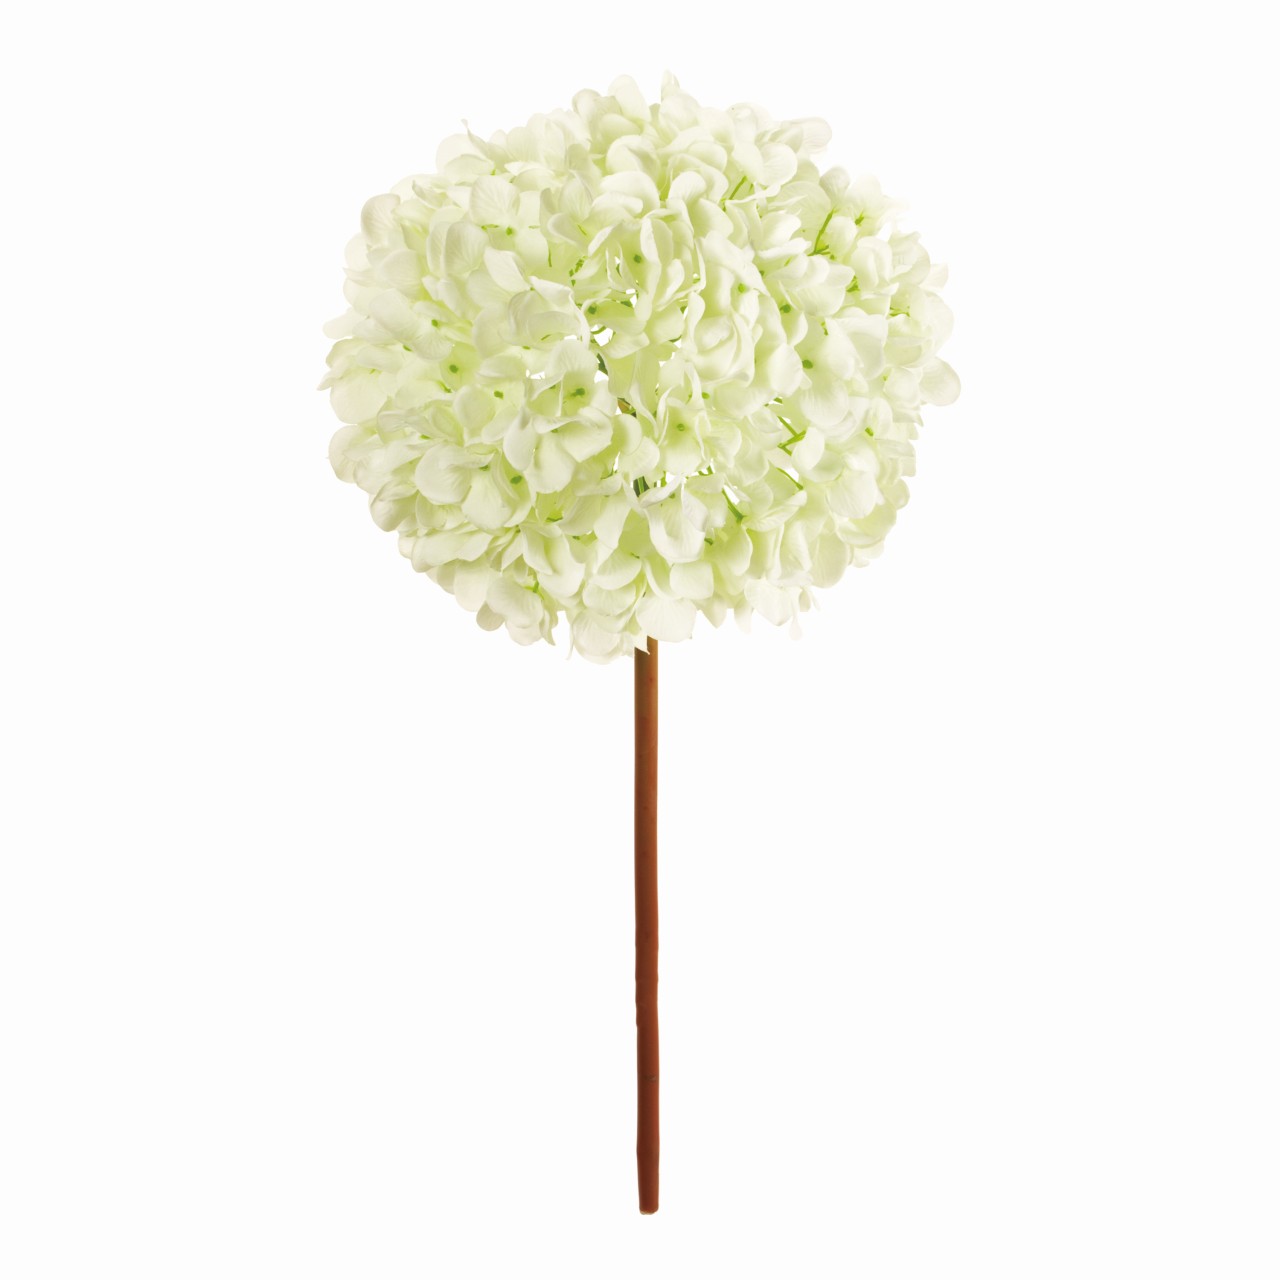 マイフラ 通販 Magiq フリルフルハイドレンジア ホワイトグリーン アーティフィシャルフラワー 造花 Fm0000 001 あじさい ハイドレンジア ホワイトグリーン Magiq アーティフィシャルフラワー 造花 全国にmagiq 花器 花資材などをお届けします